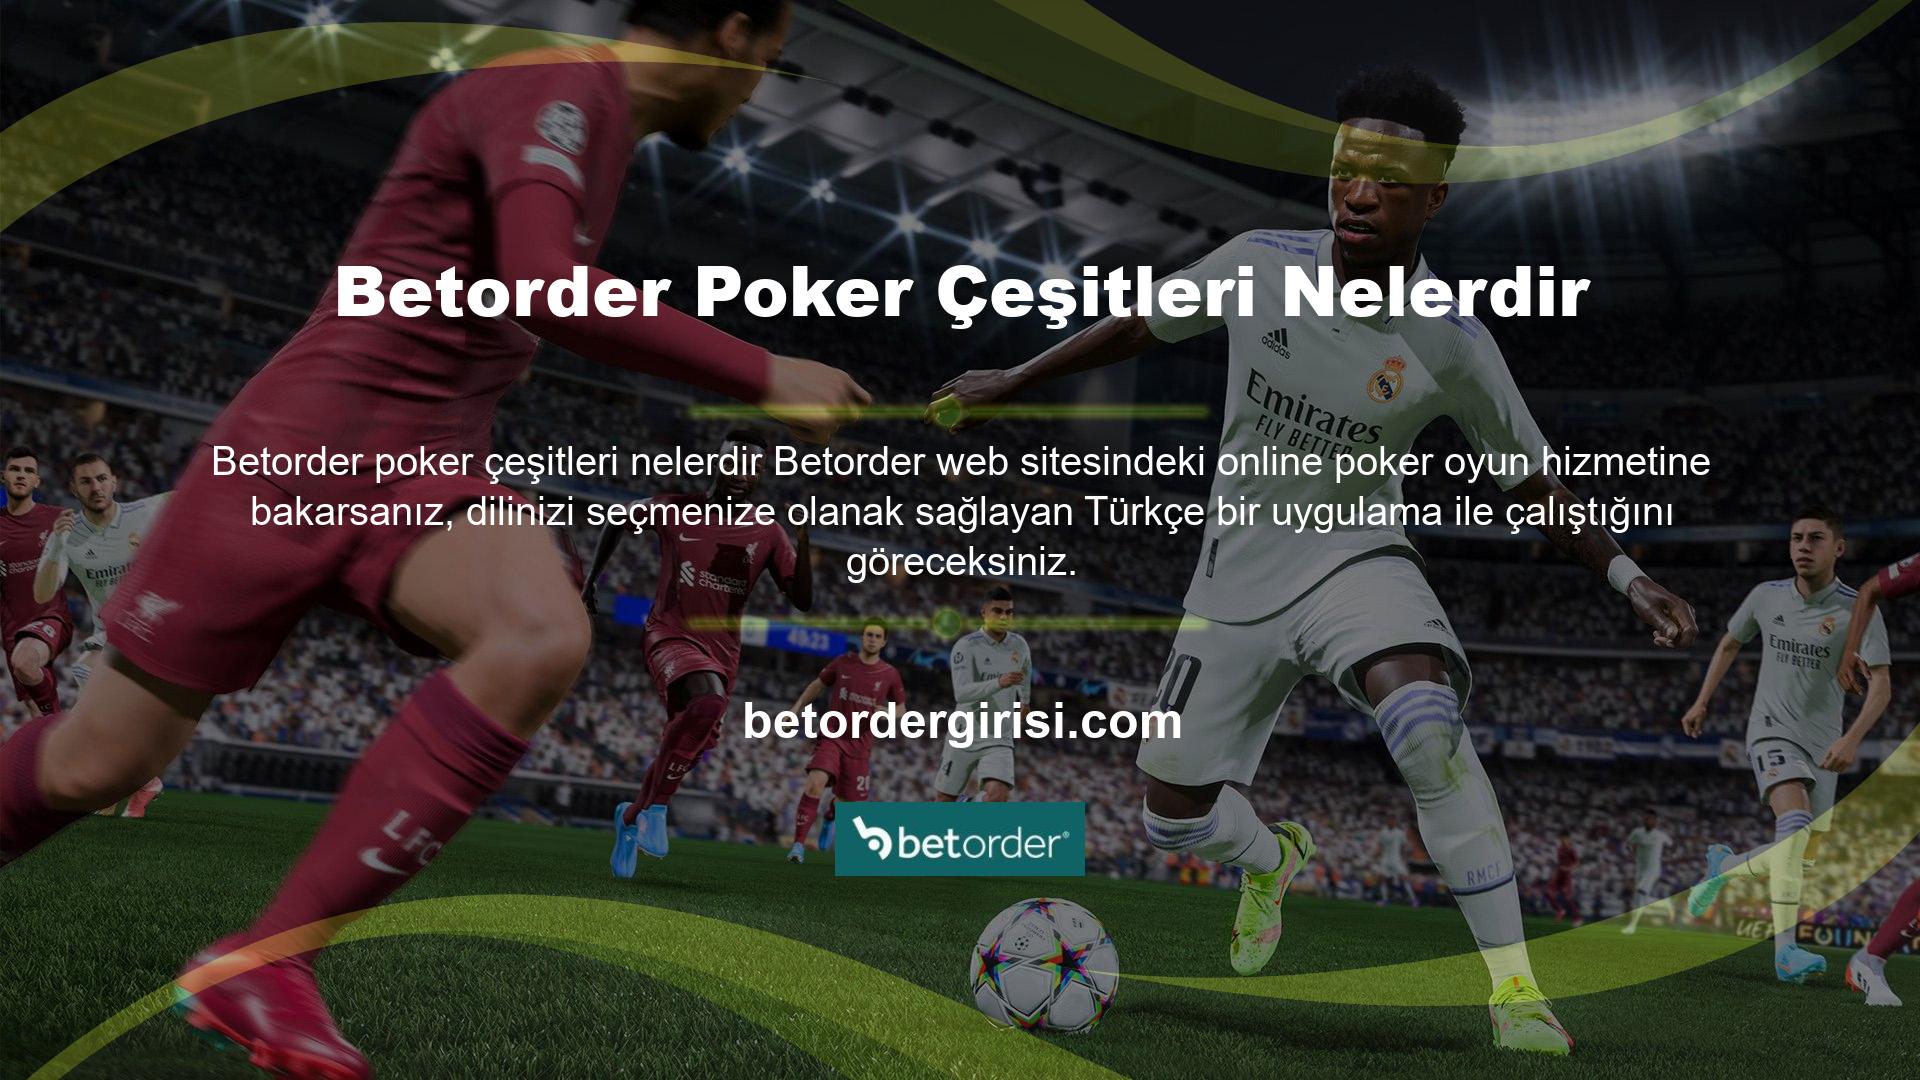 Canlı Türkçe Poker ve diğer poker oyunu seçenekleri, krupiyelerle Türkçe konuşmanıza, oyunları Türkçe oynamanıza, diğer oyuncularla sohbet etmenize ve Türkçe sohbet özelliğini kullanmanıza olanak tanır